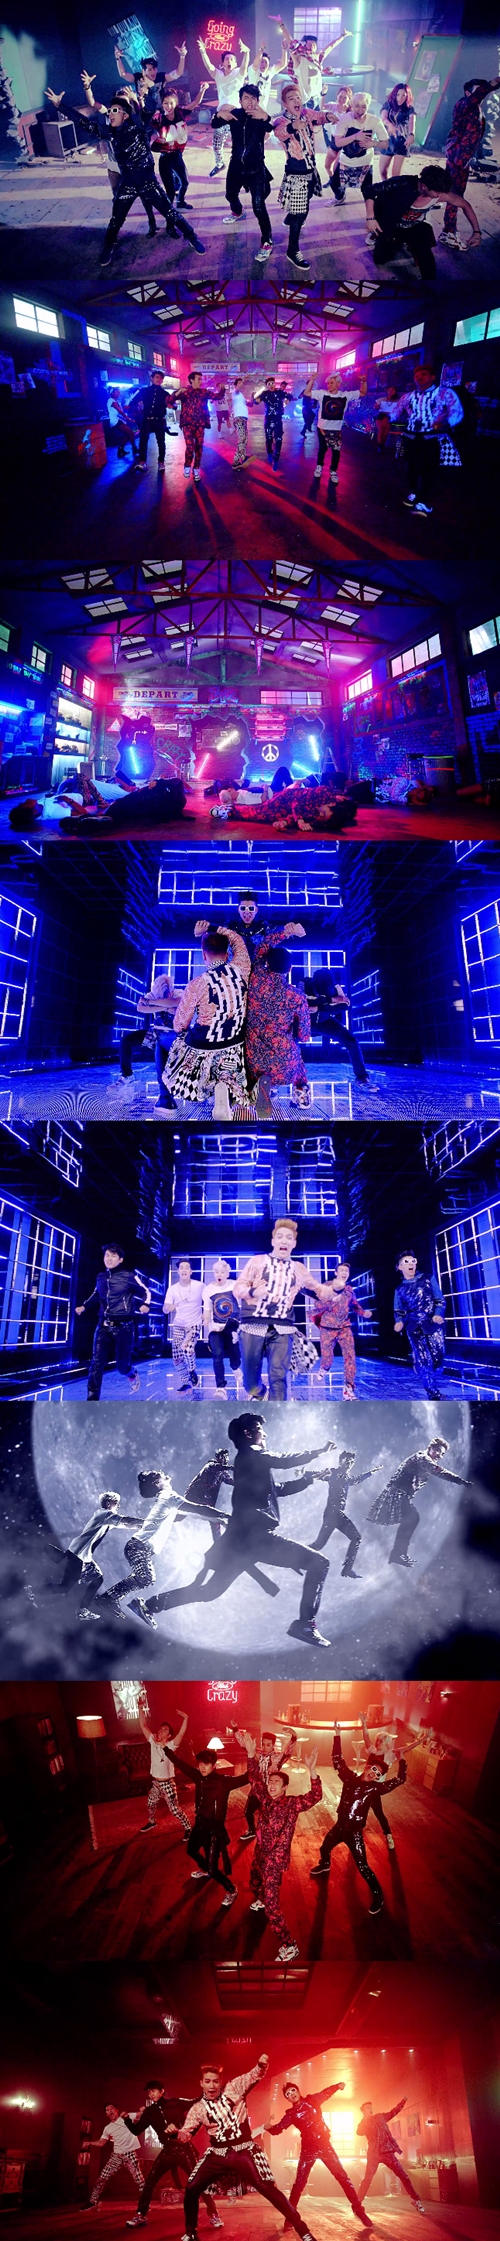 【影片】2PM新歌《GO CRAZY!》MV釋出 24小時內點閱率破百萬